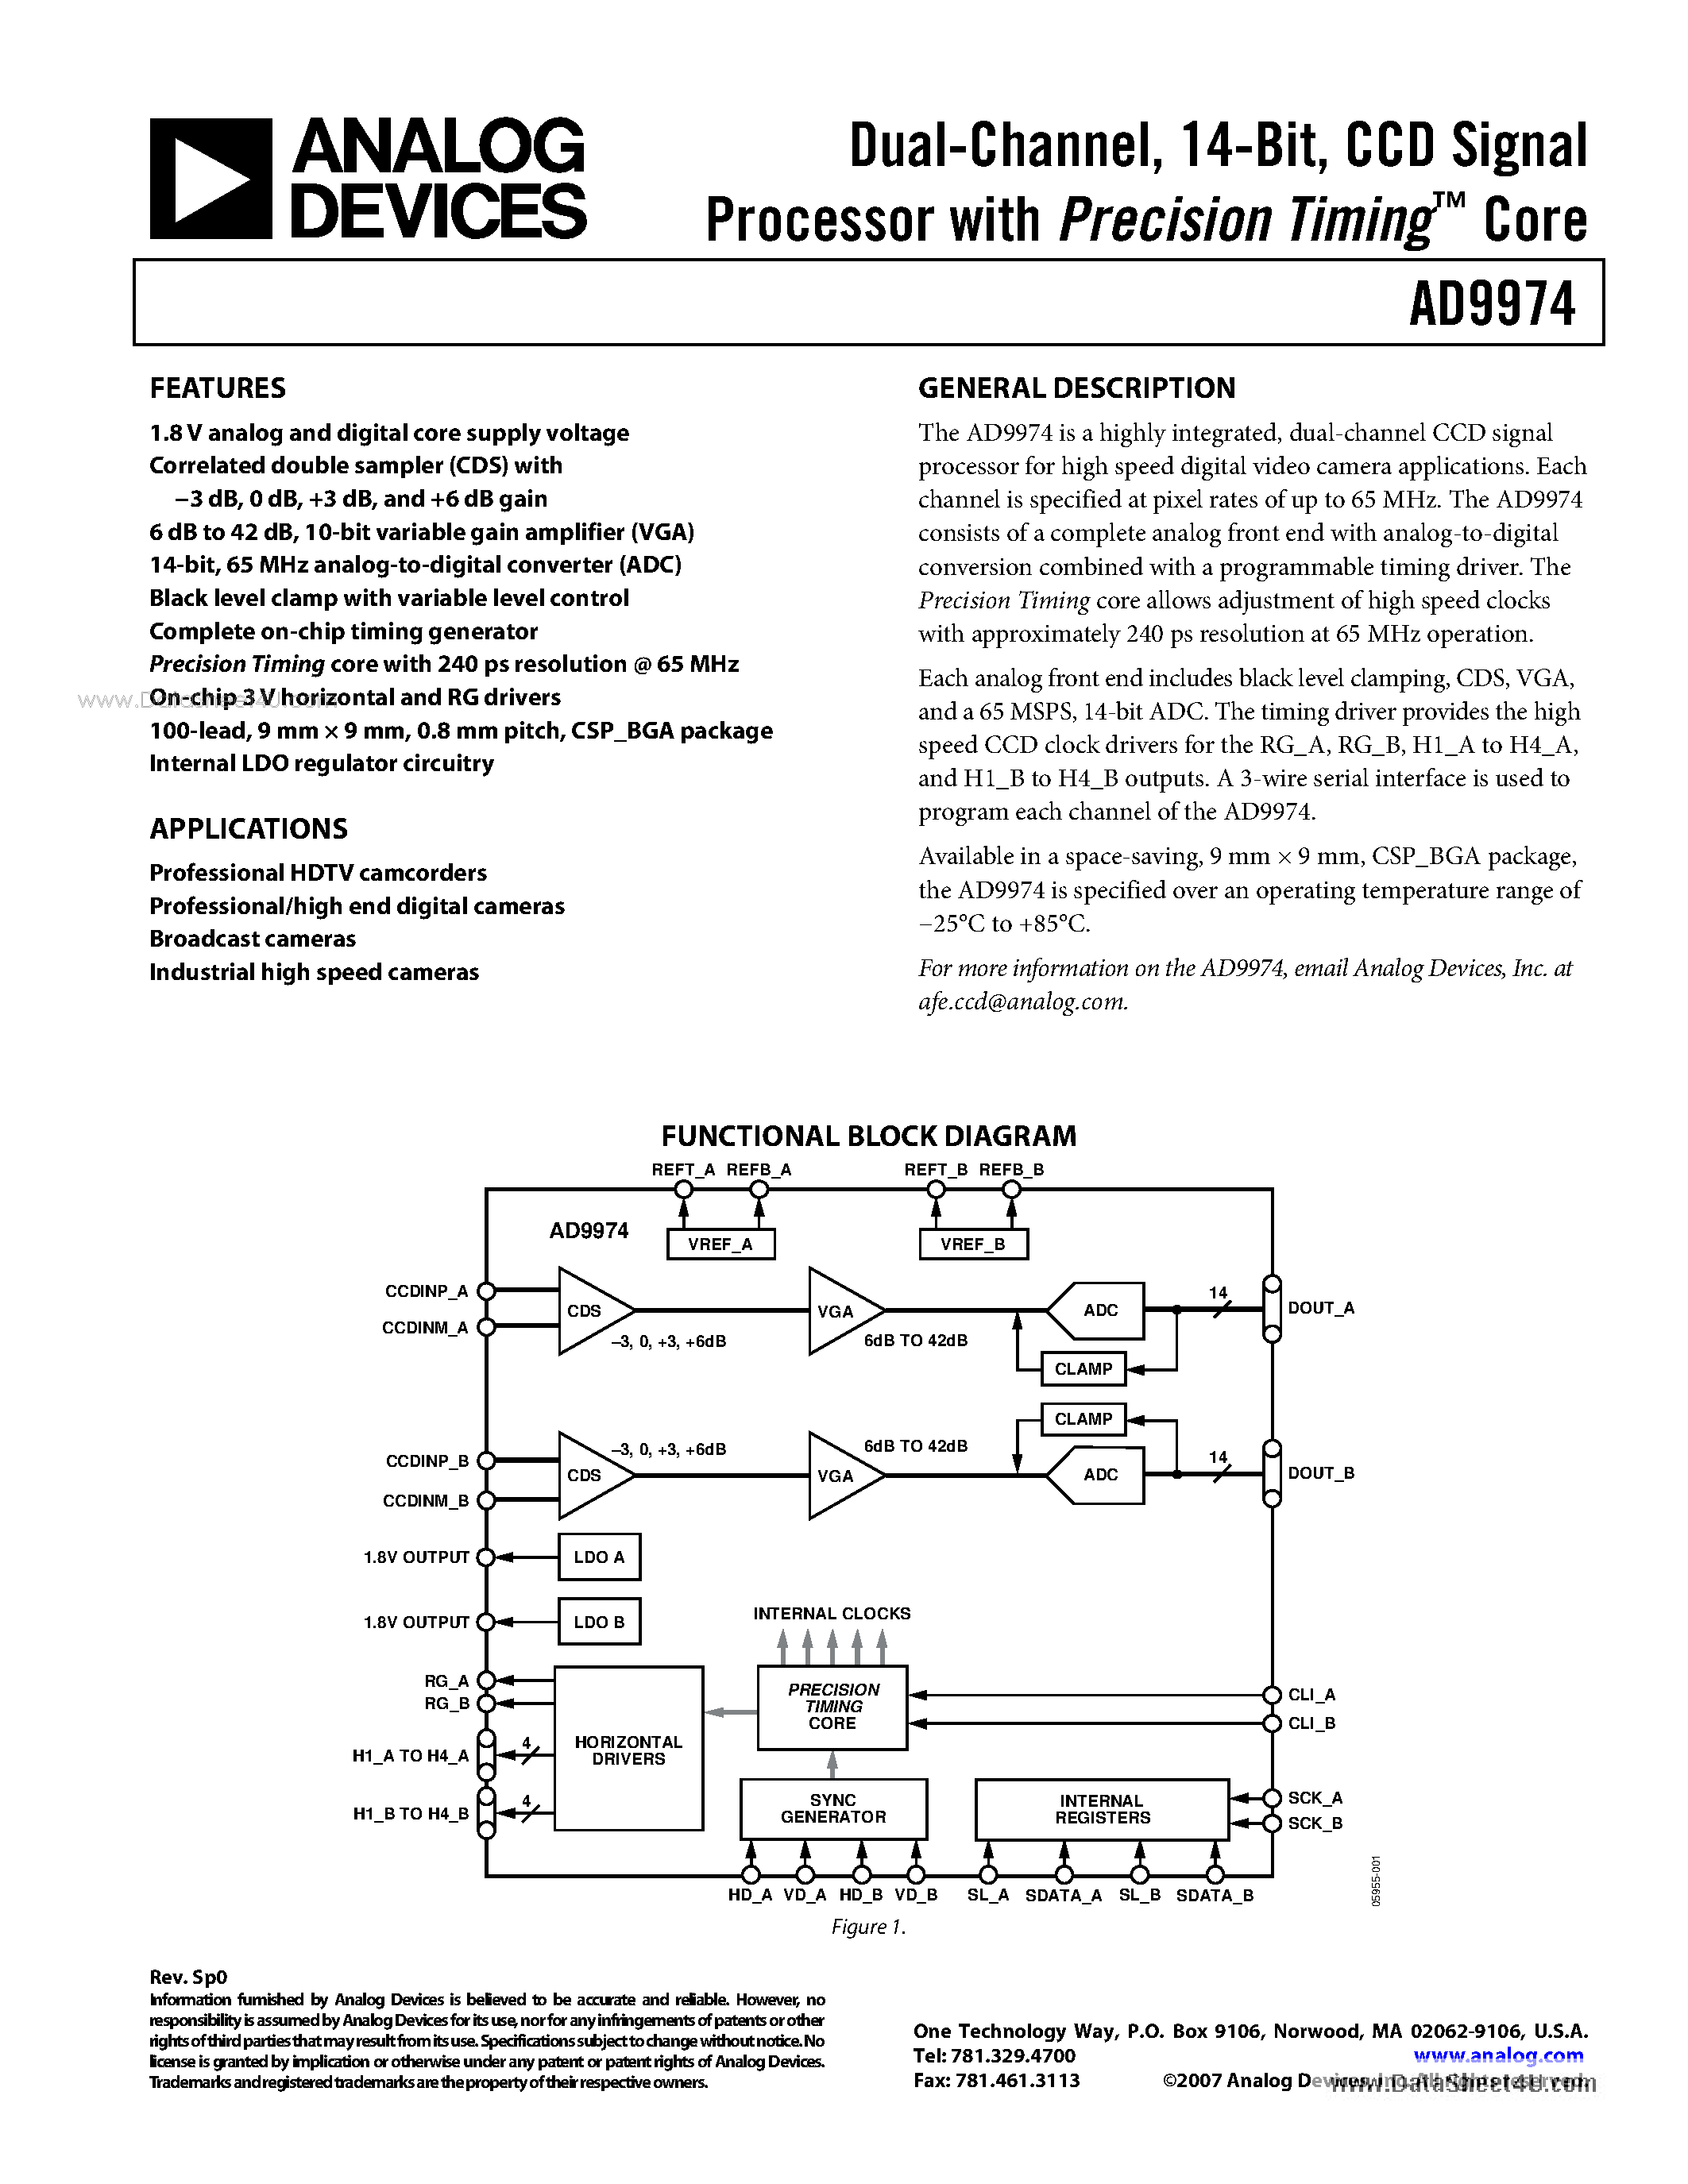 Даташит AD9974 - CCD Signal Processor страница 1